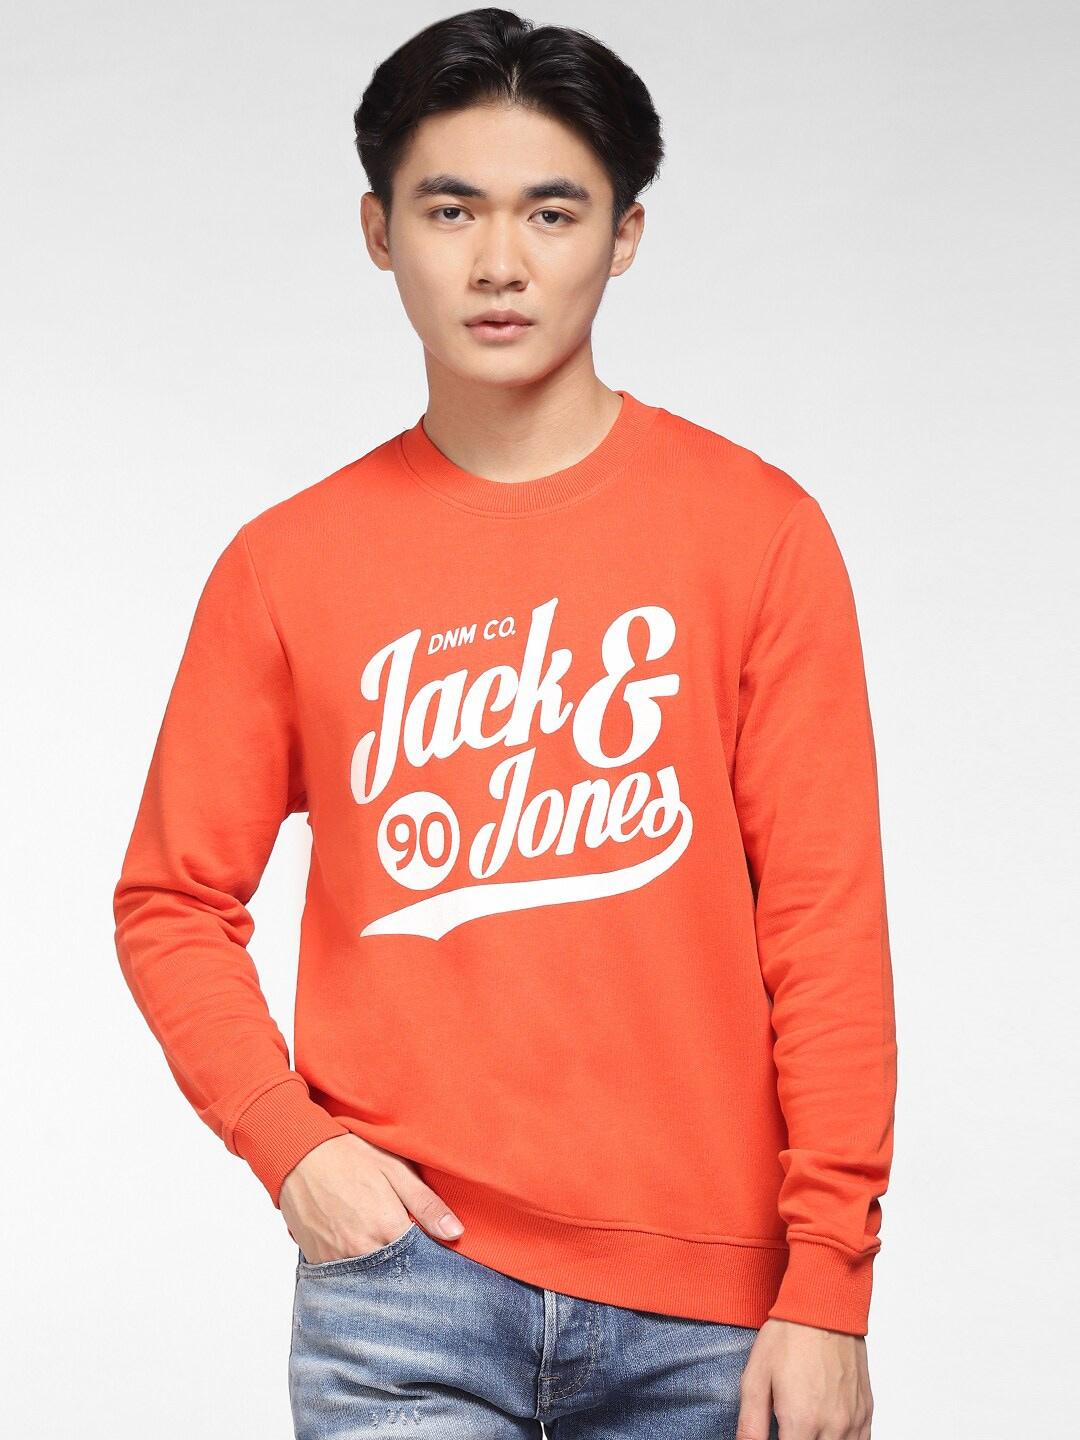 jack-&-jones-men-orange-typography-printed-jjor-detroit-sweat-crew-neck-cotton-sweatshirt